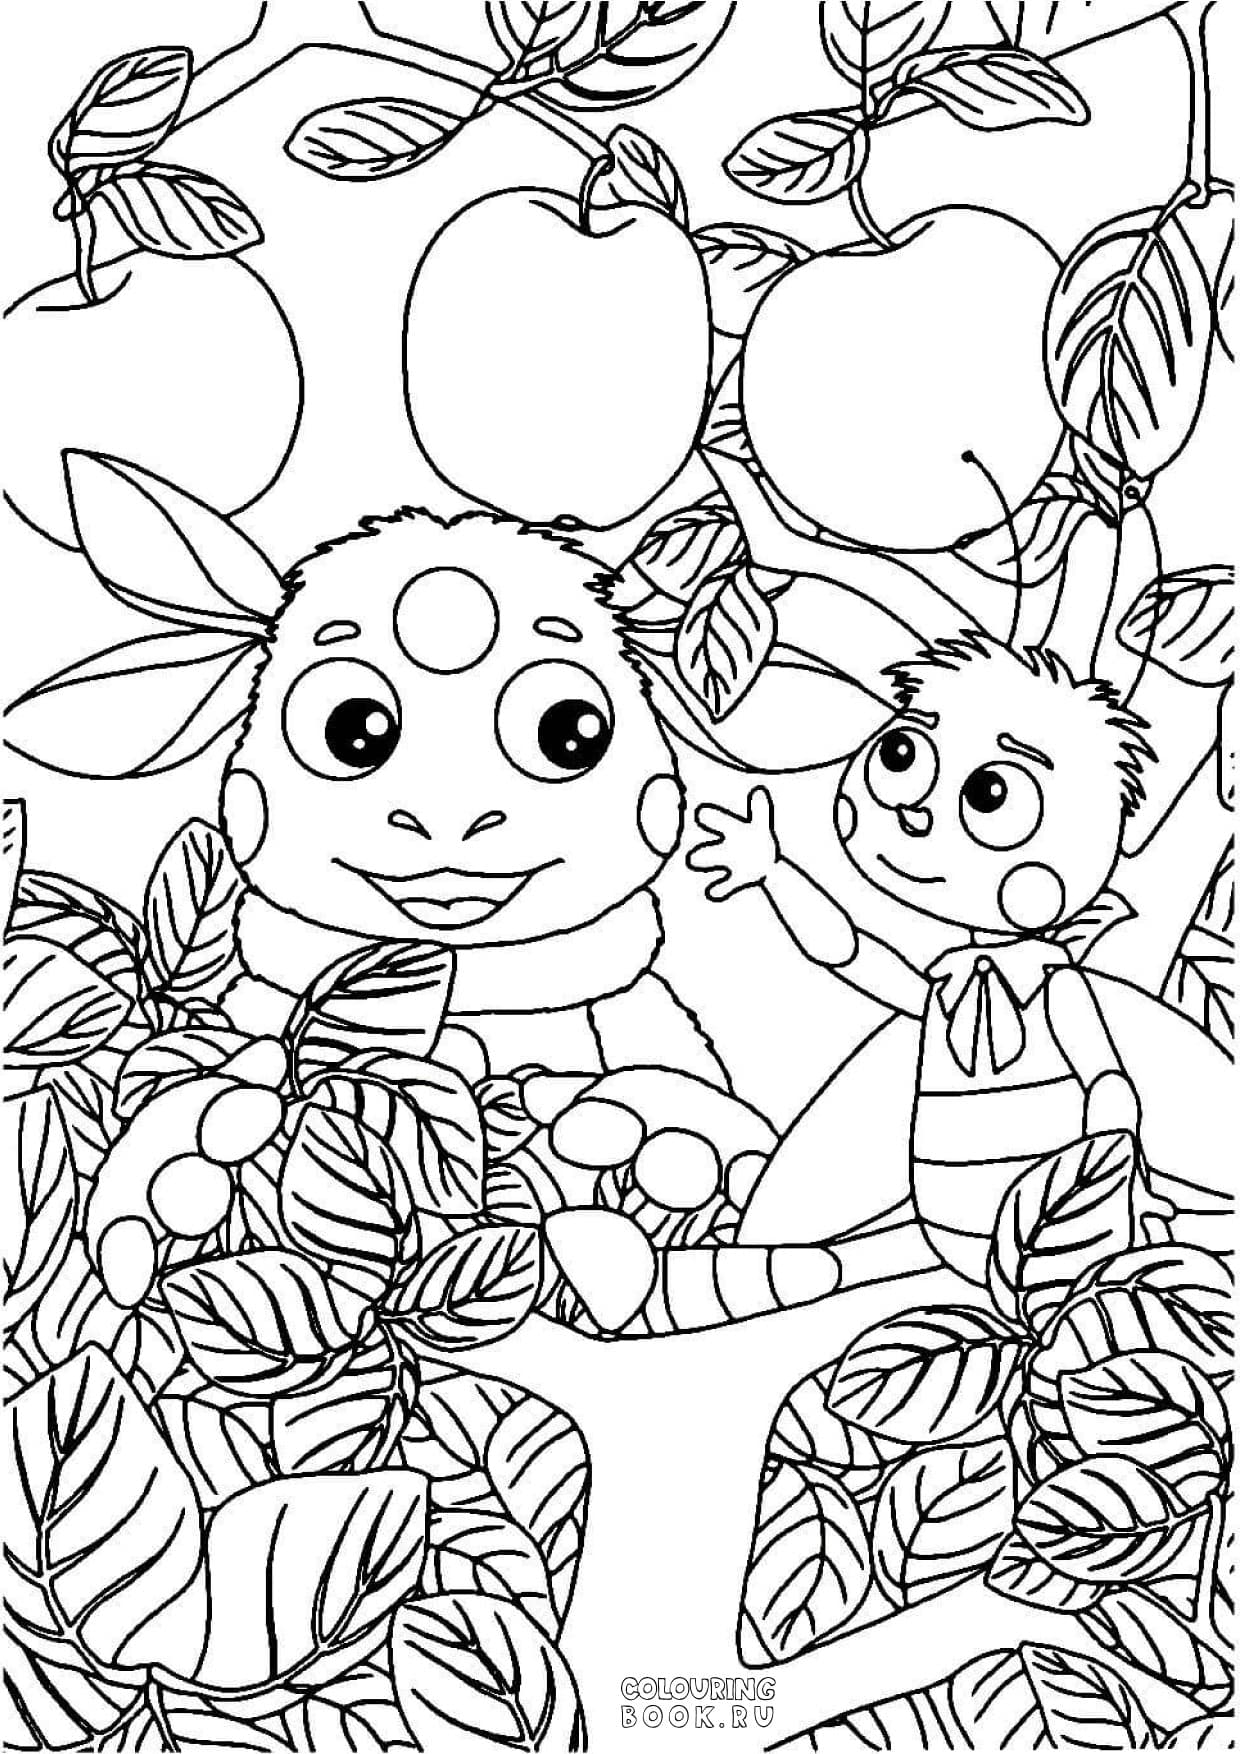 Раскраски Лунтик и его друзья — Megaboo - Маркетплейс детских игрушек